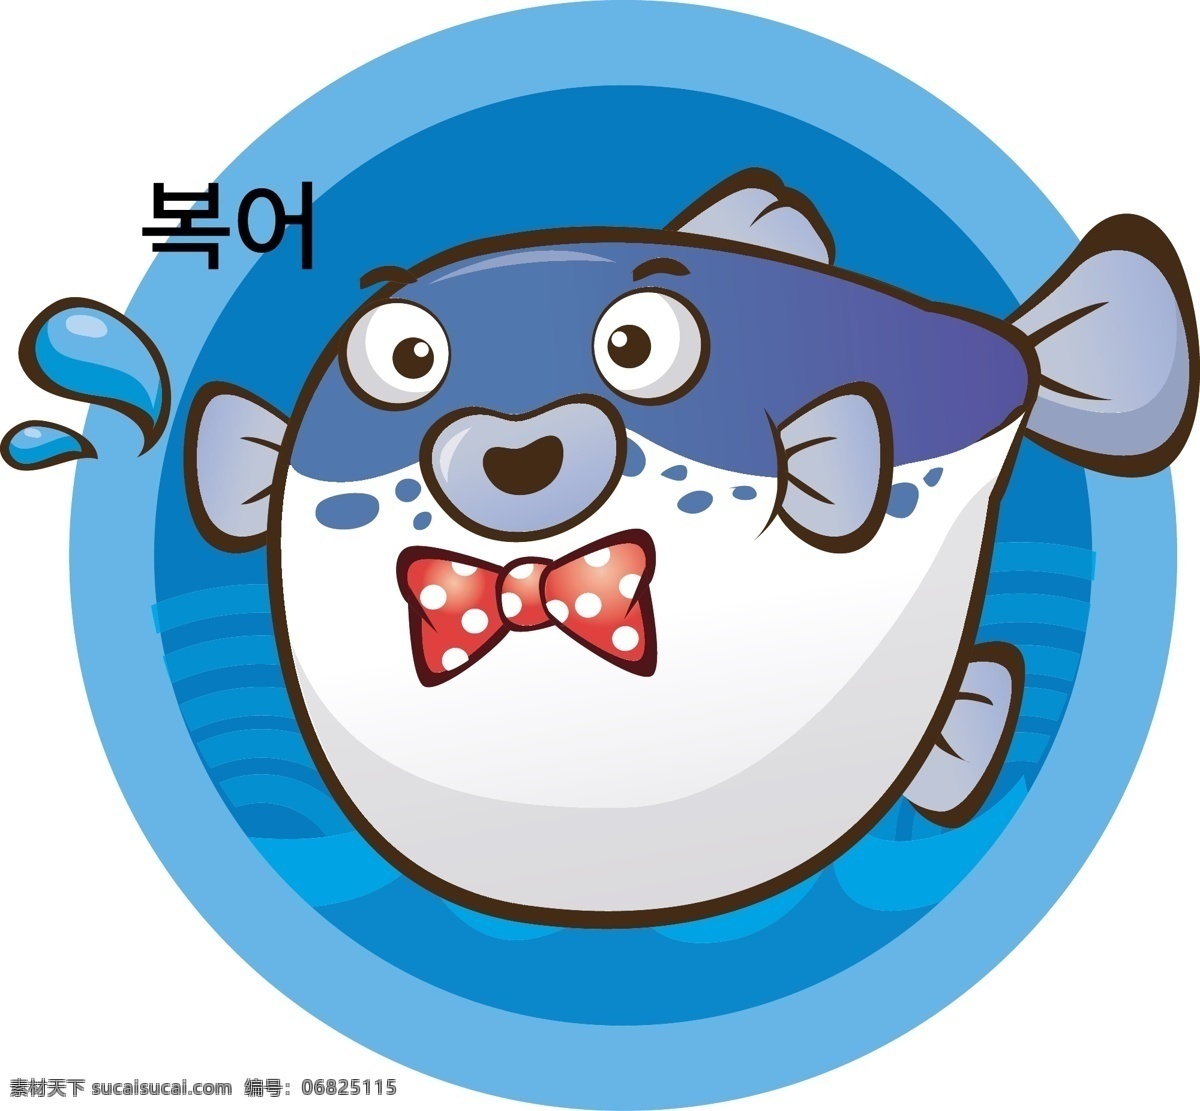 海鲜 卡通动物 卡通设计 可爱 蓝色 生物世界 矢量图库 鱼 卡通 河豚 矢量图 鱼类 矢量